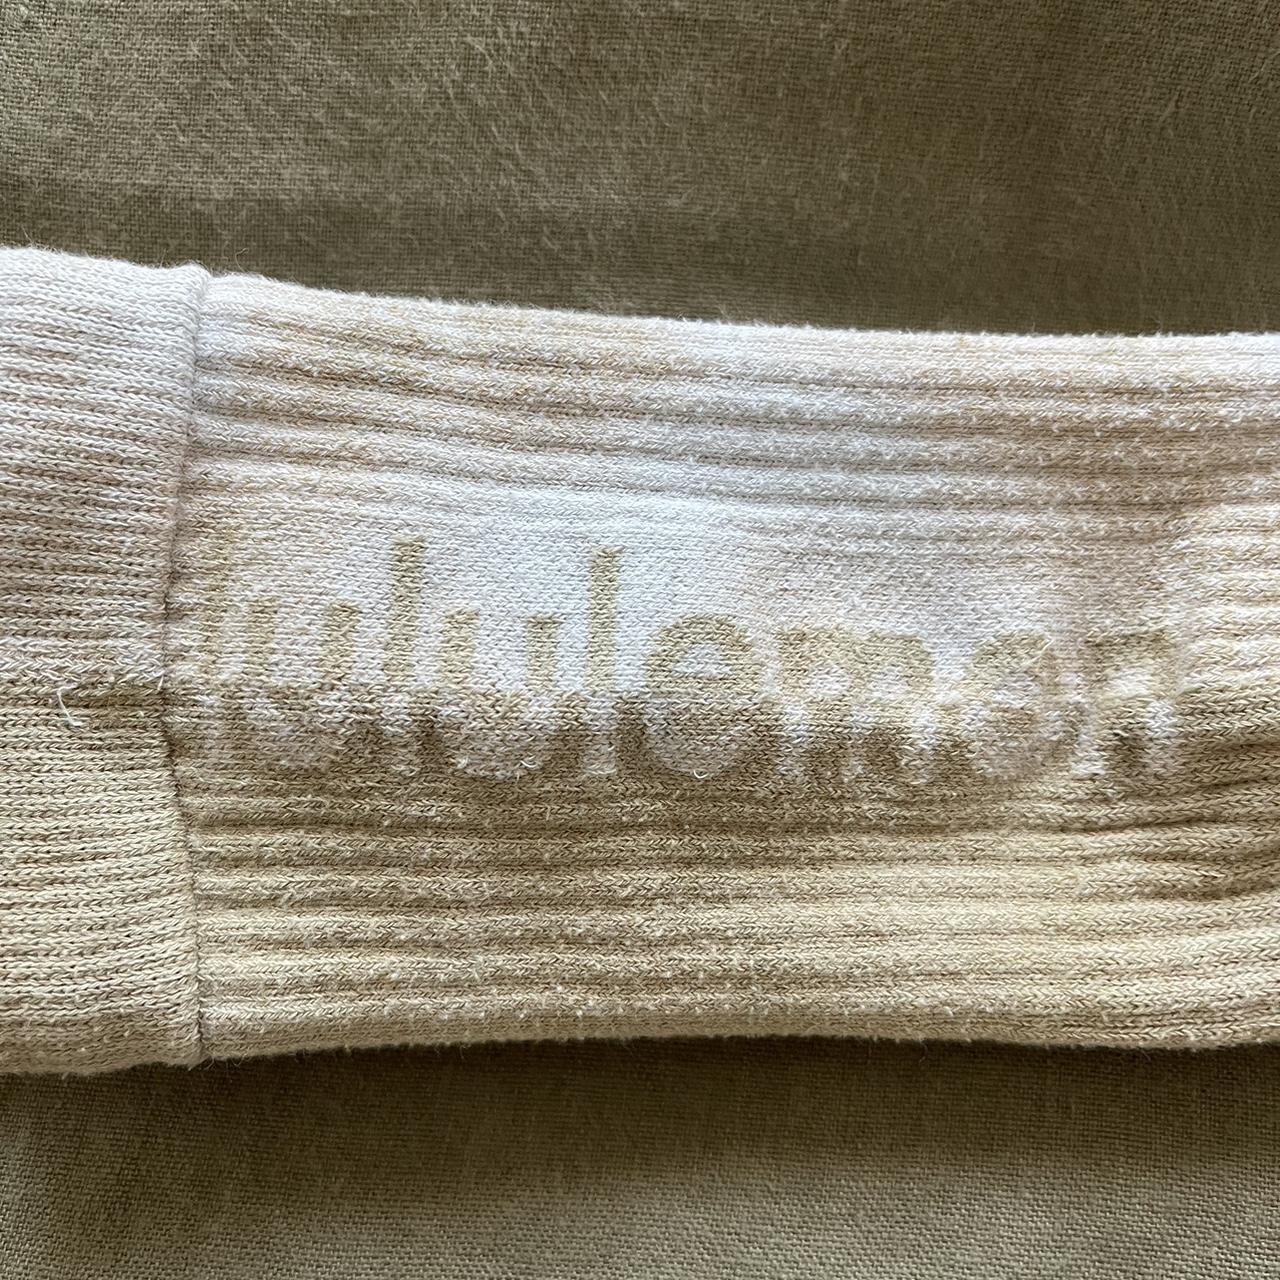 Lululemon Everyday Socks